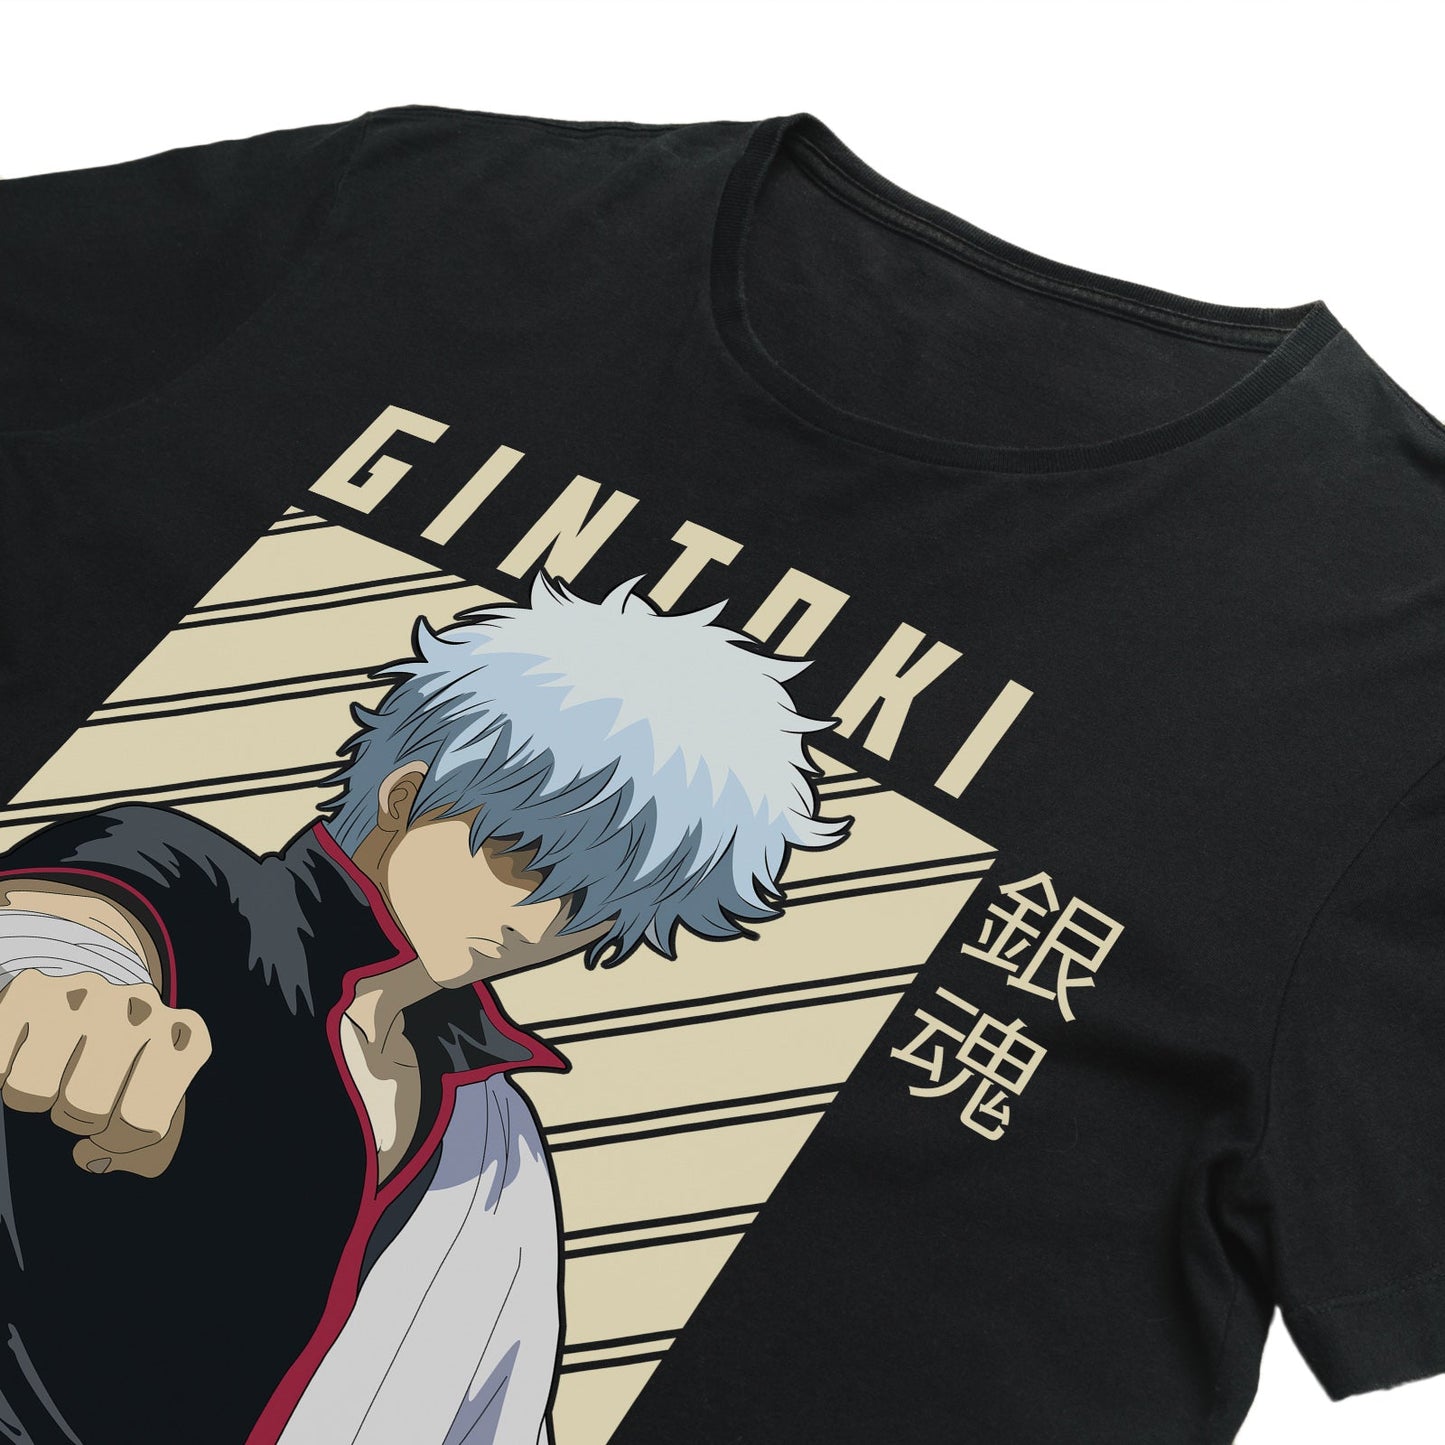 Camiseta Gintama Ver. 2